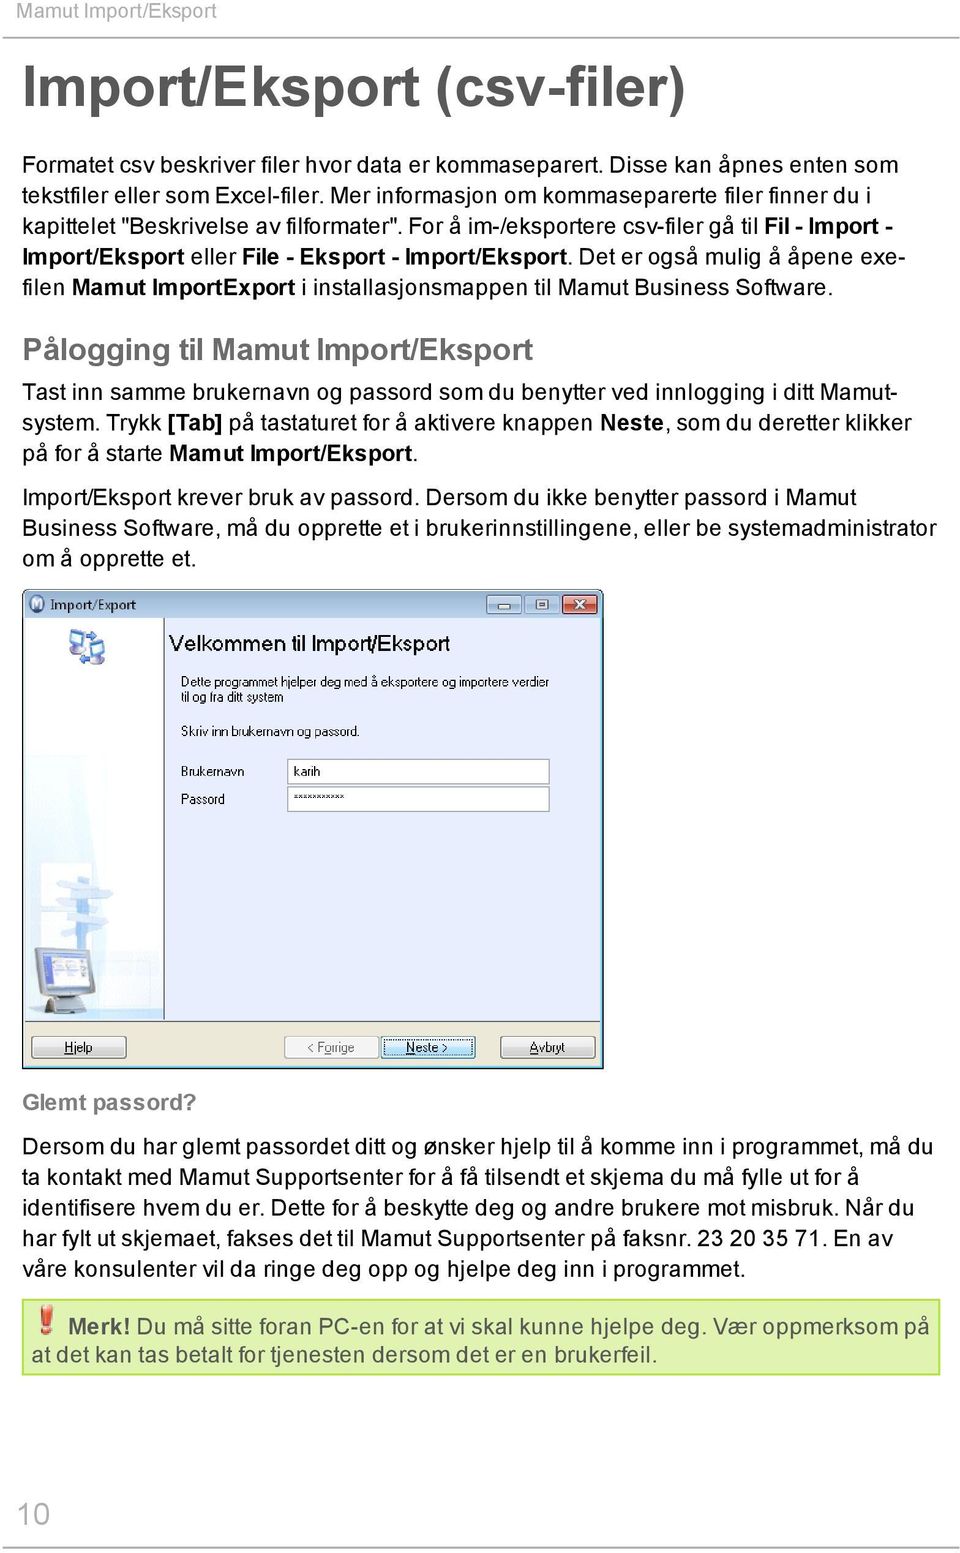 Det er også mulig å åpene exefilen Mamut ImportExport i installasjonsmappen til Mamut Business Software.